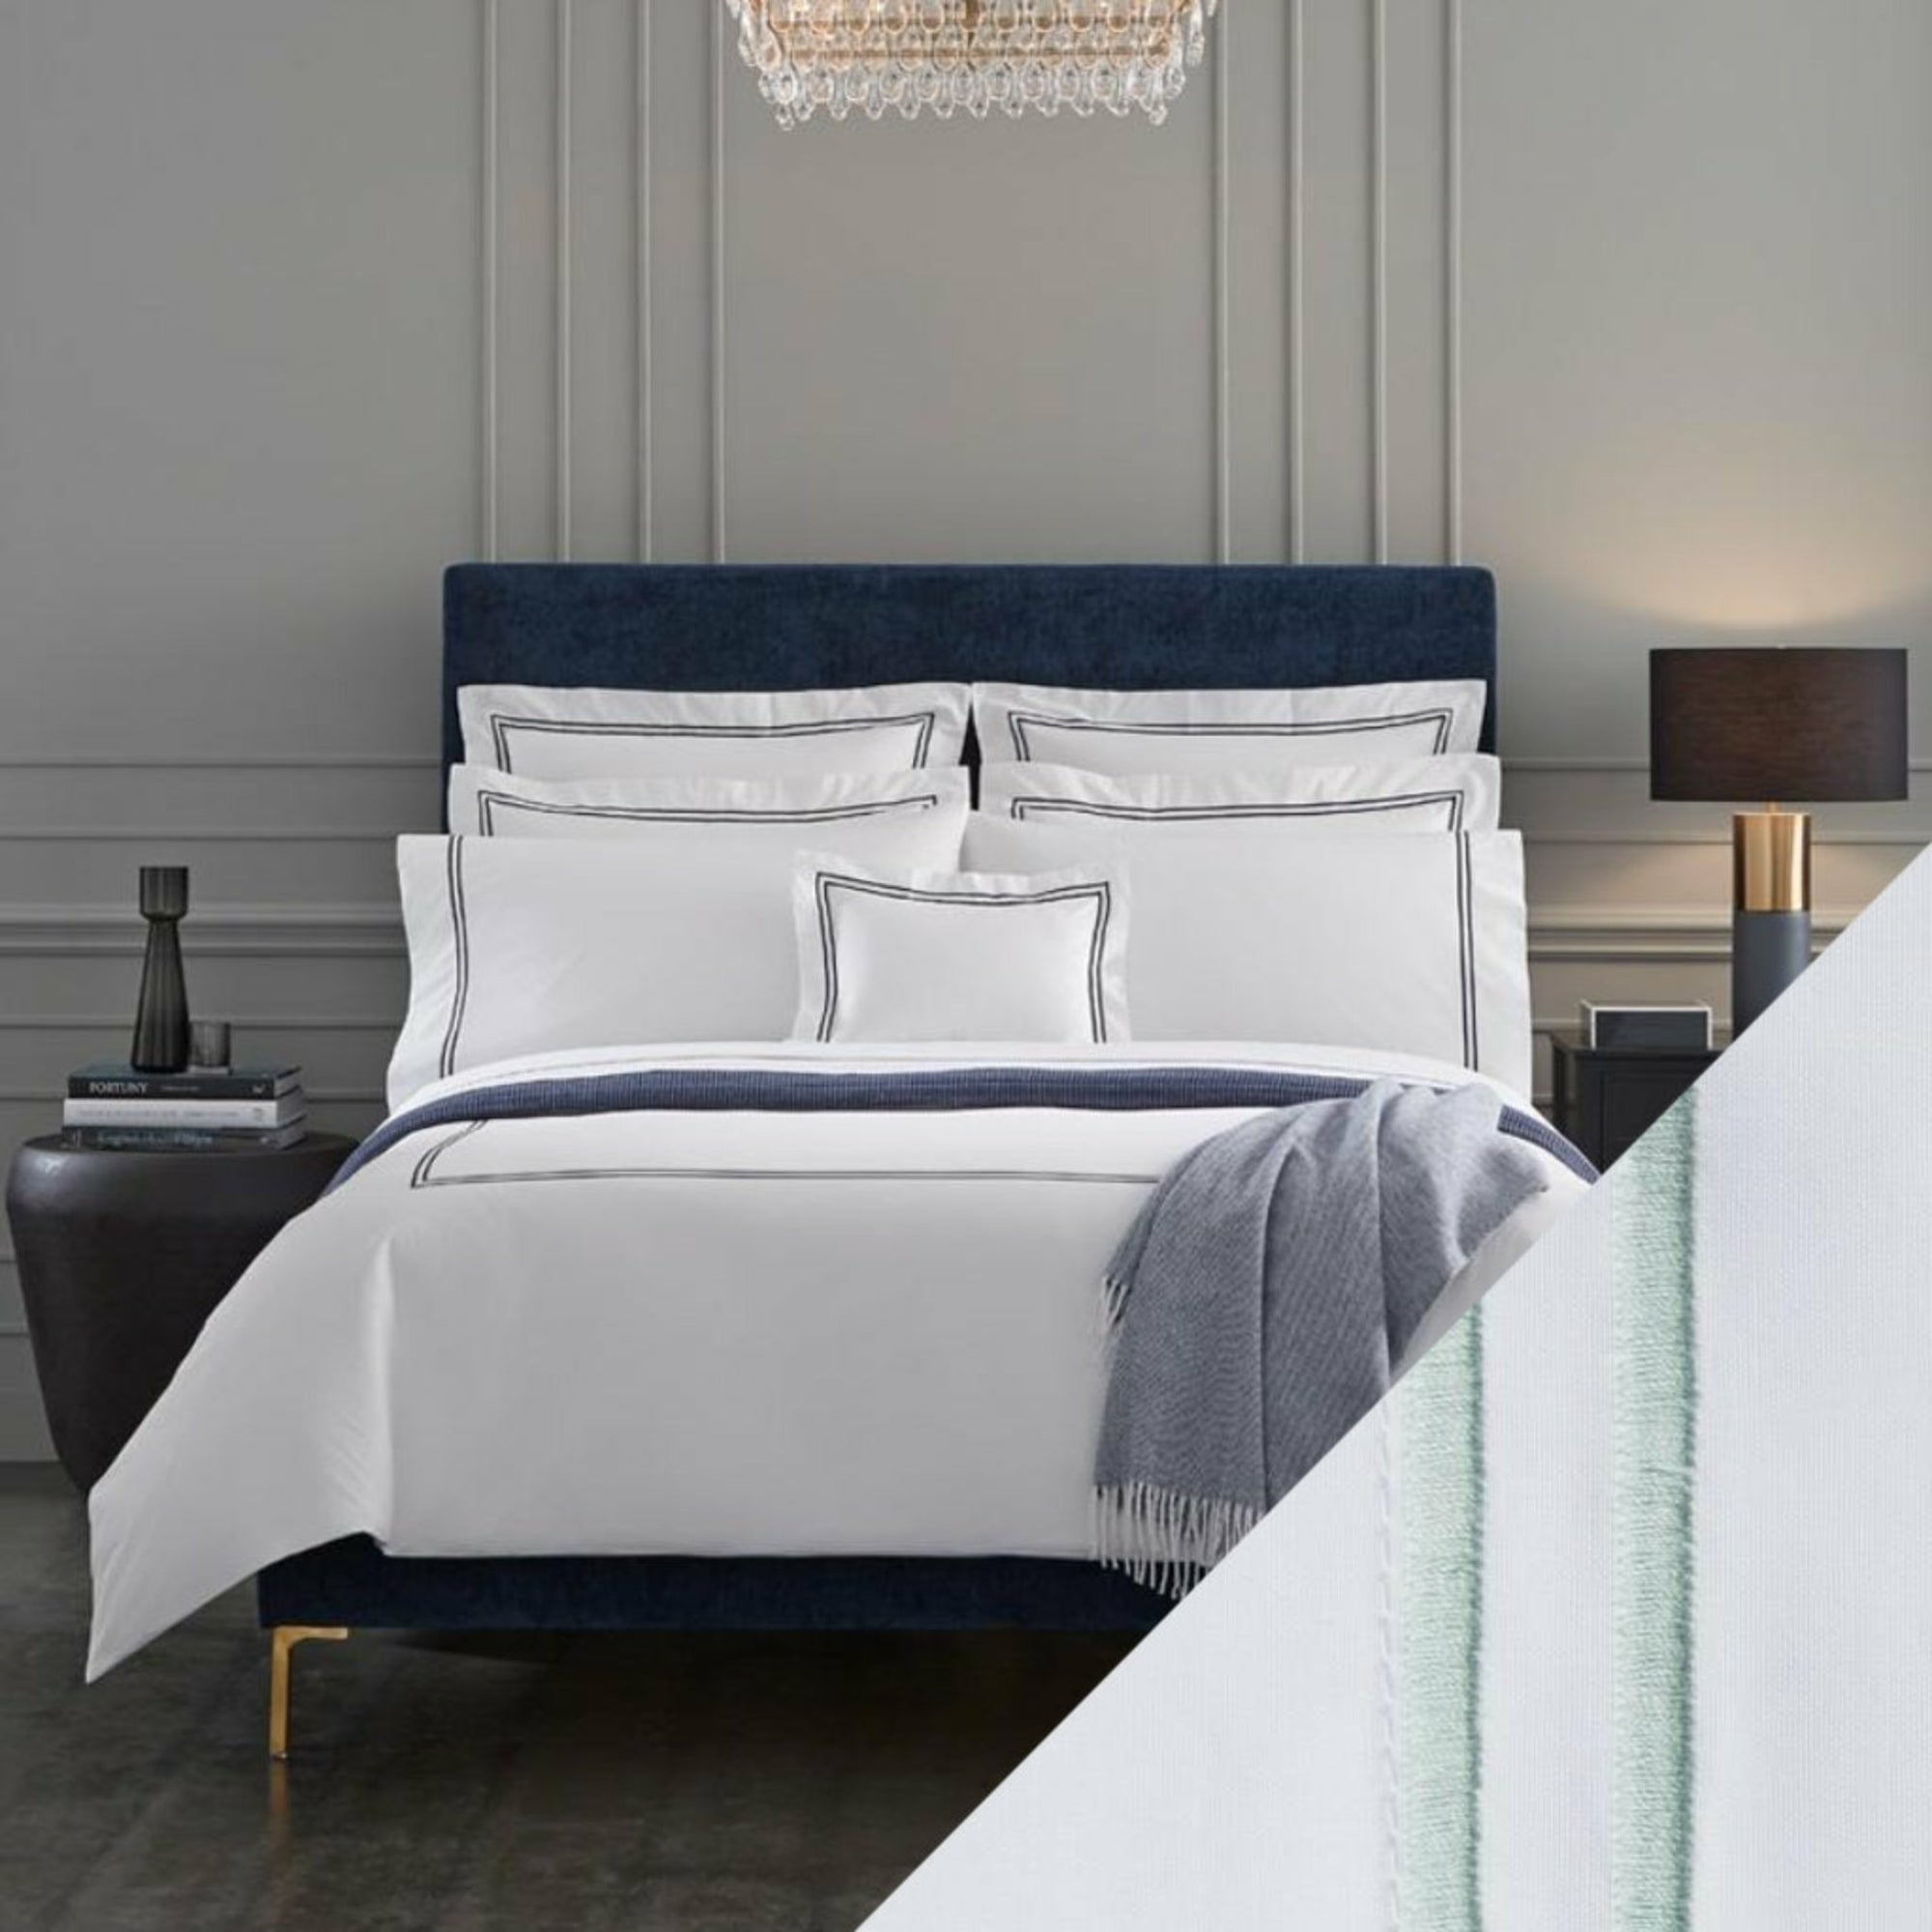 Sferra Grande Hotel Collection White/Mist Fine Linens